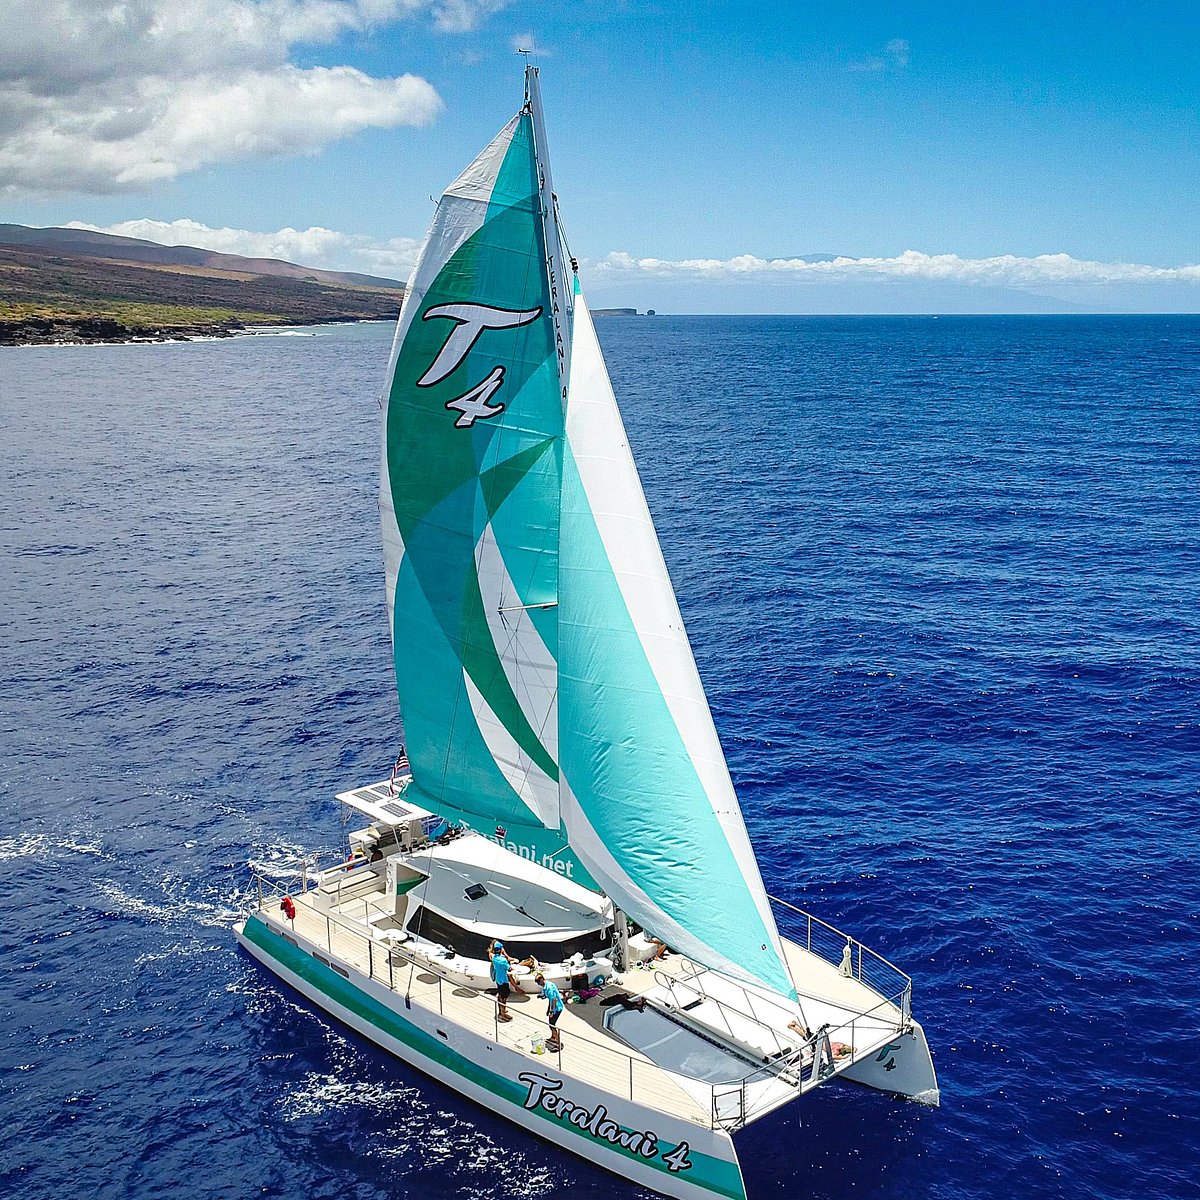 teralani luxury sailing catamarans